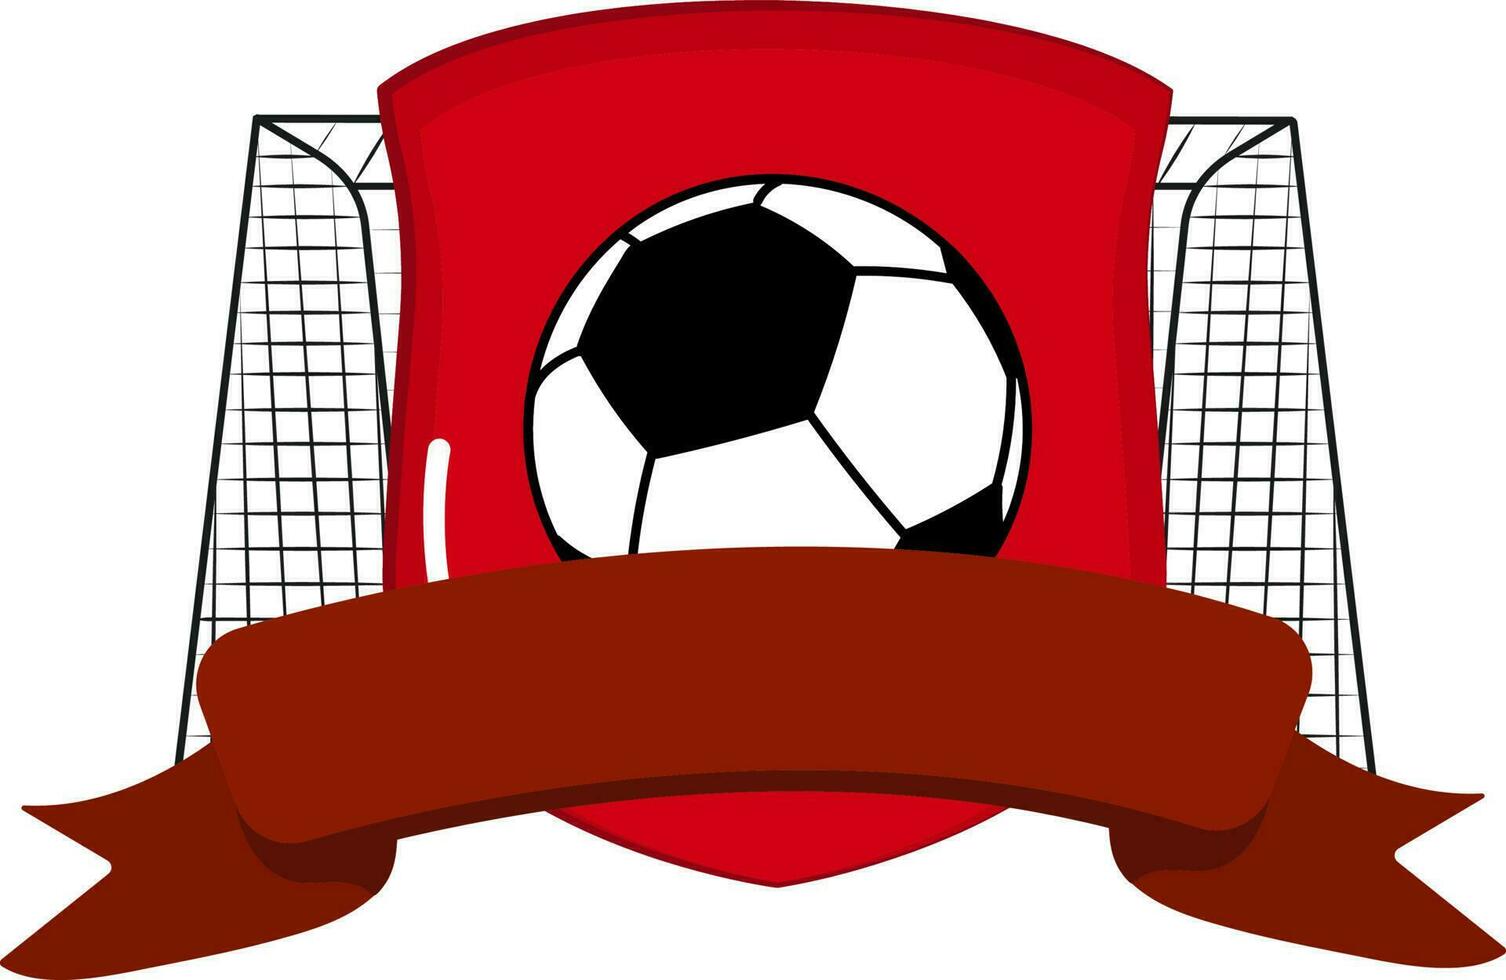 blanco cinta con fútbol pelota, proteger y objetivo red para fútbol americano partido concepto. vector